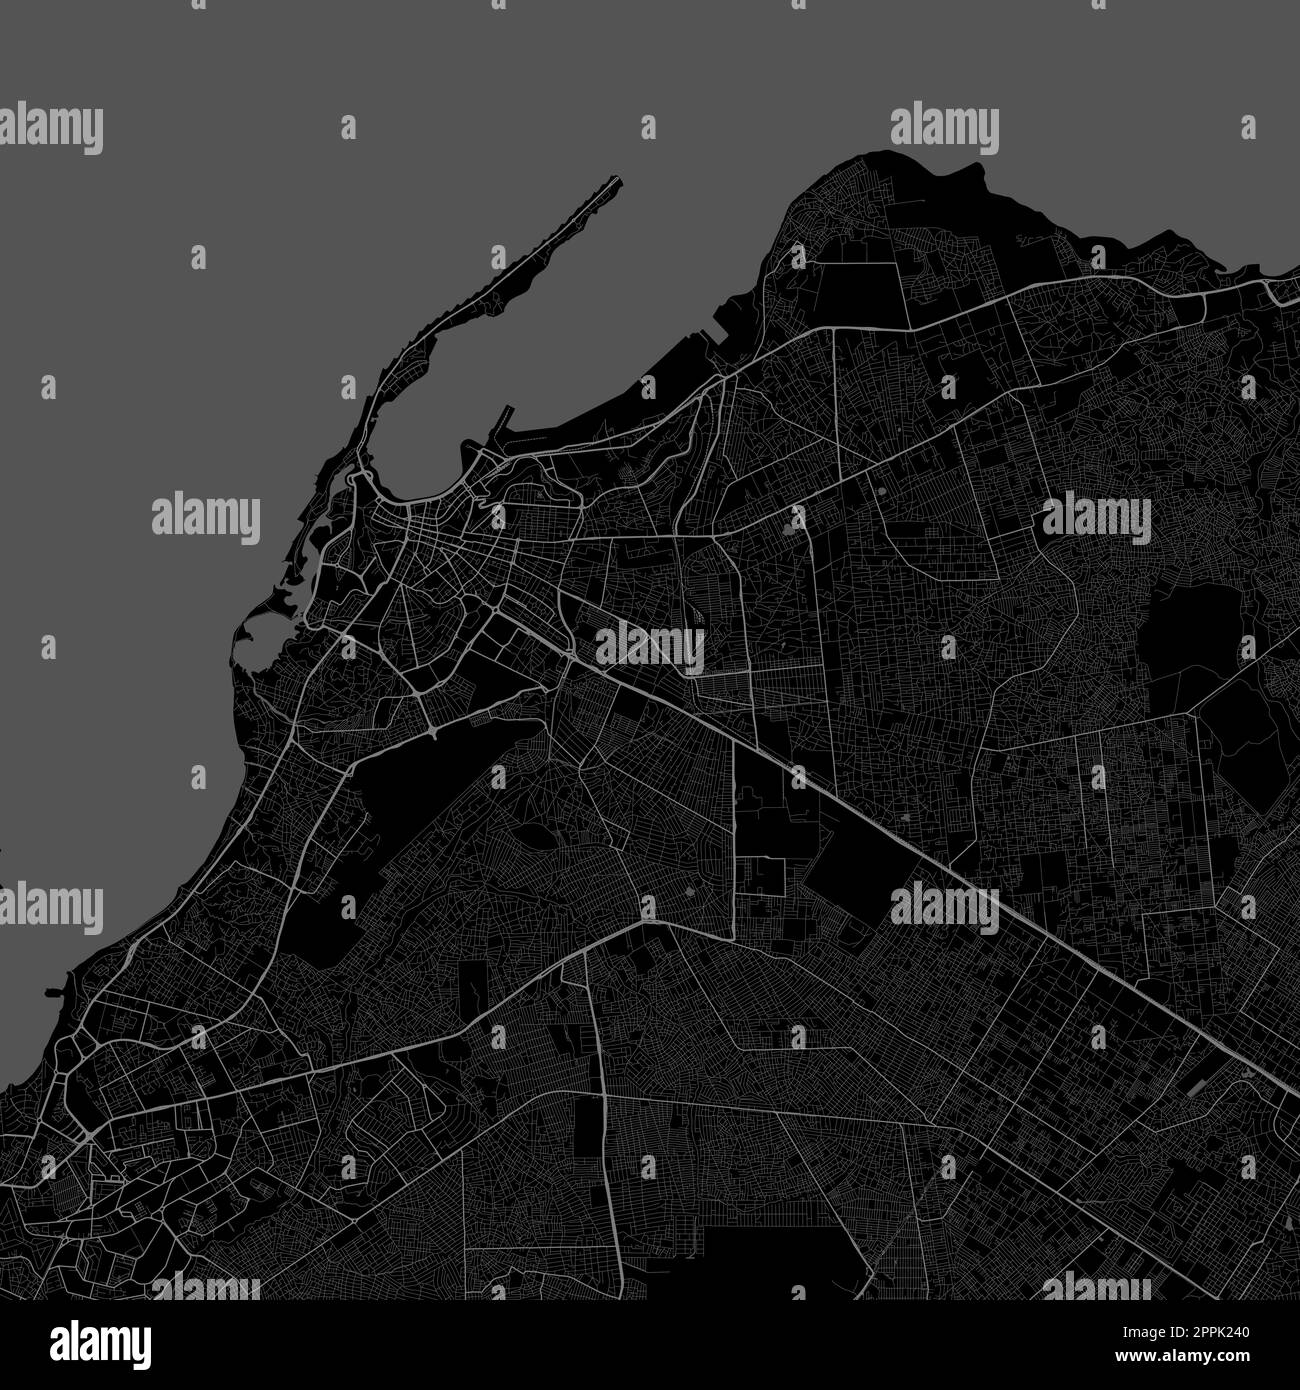 Plan de la ville de Luanda, capitale de l'Angola. Carte administrative municipale en noir et blanc avec rivières et routes, parcs et chemins de fer. Illustration vectorielle. Illustration de Vecteur